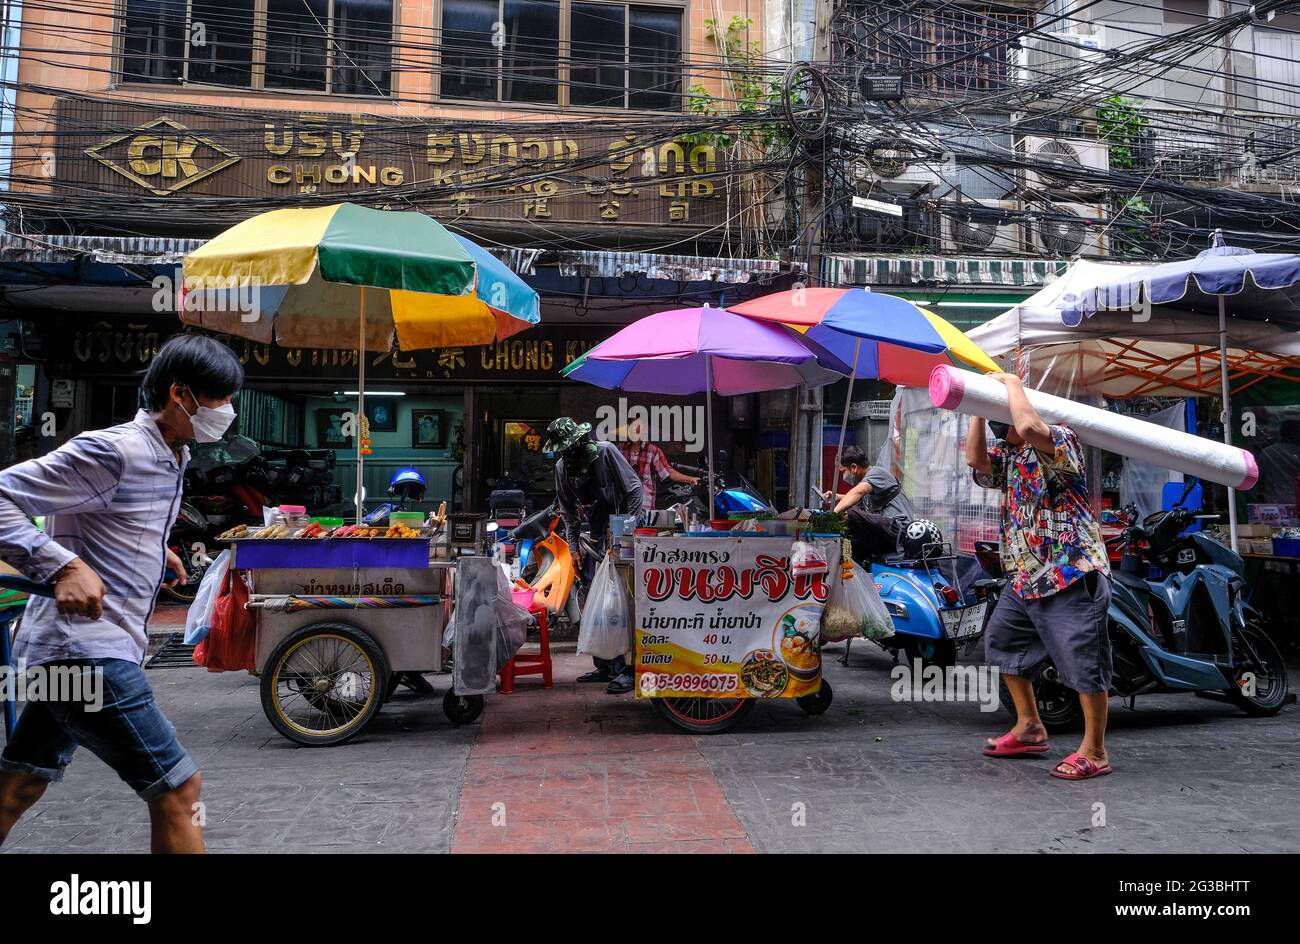 Les travailleurs et les vendeurs de rue font leurs affaires quotidiennes à Chinatown, Bangkok, Thaïlande Banque D'Images